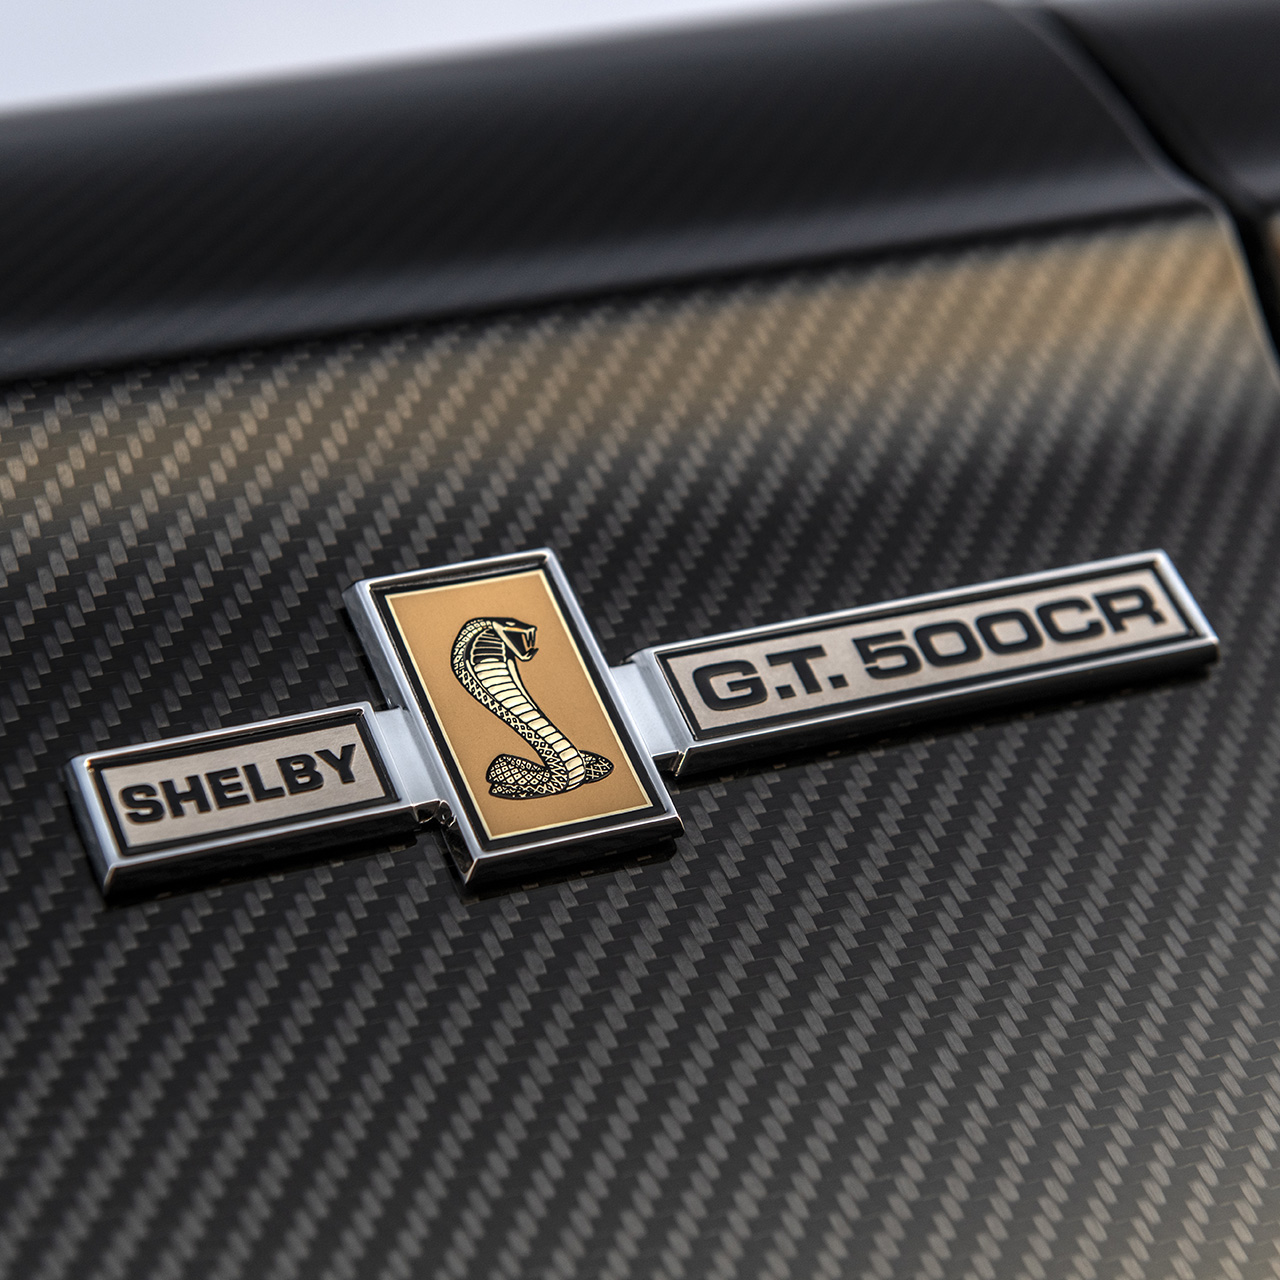 Shelby GT500 CR detalhe emblema